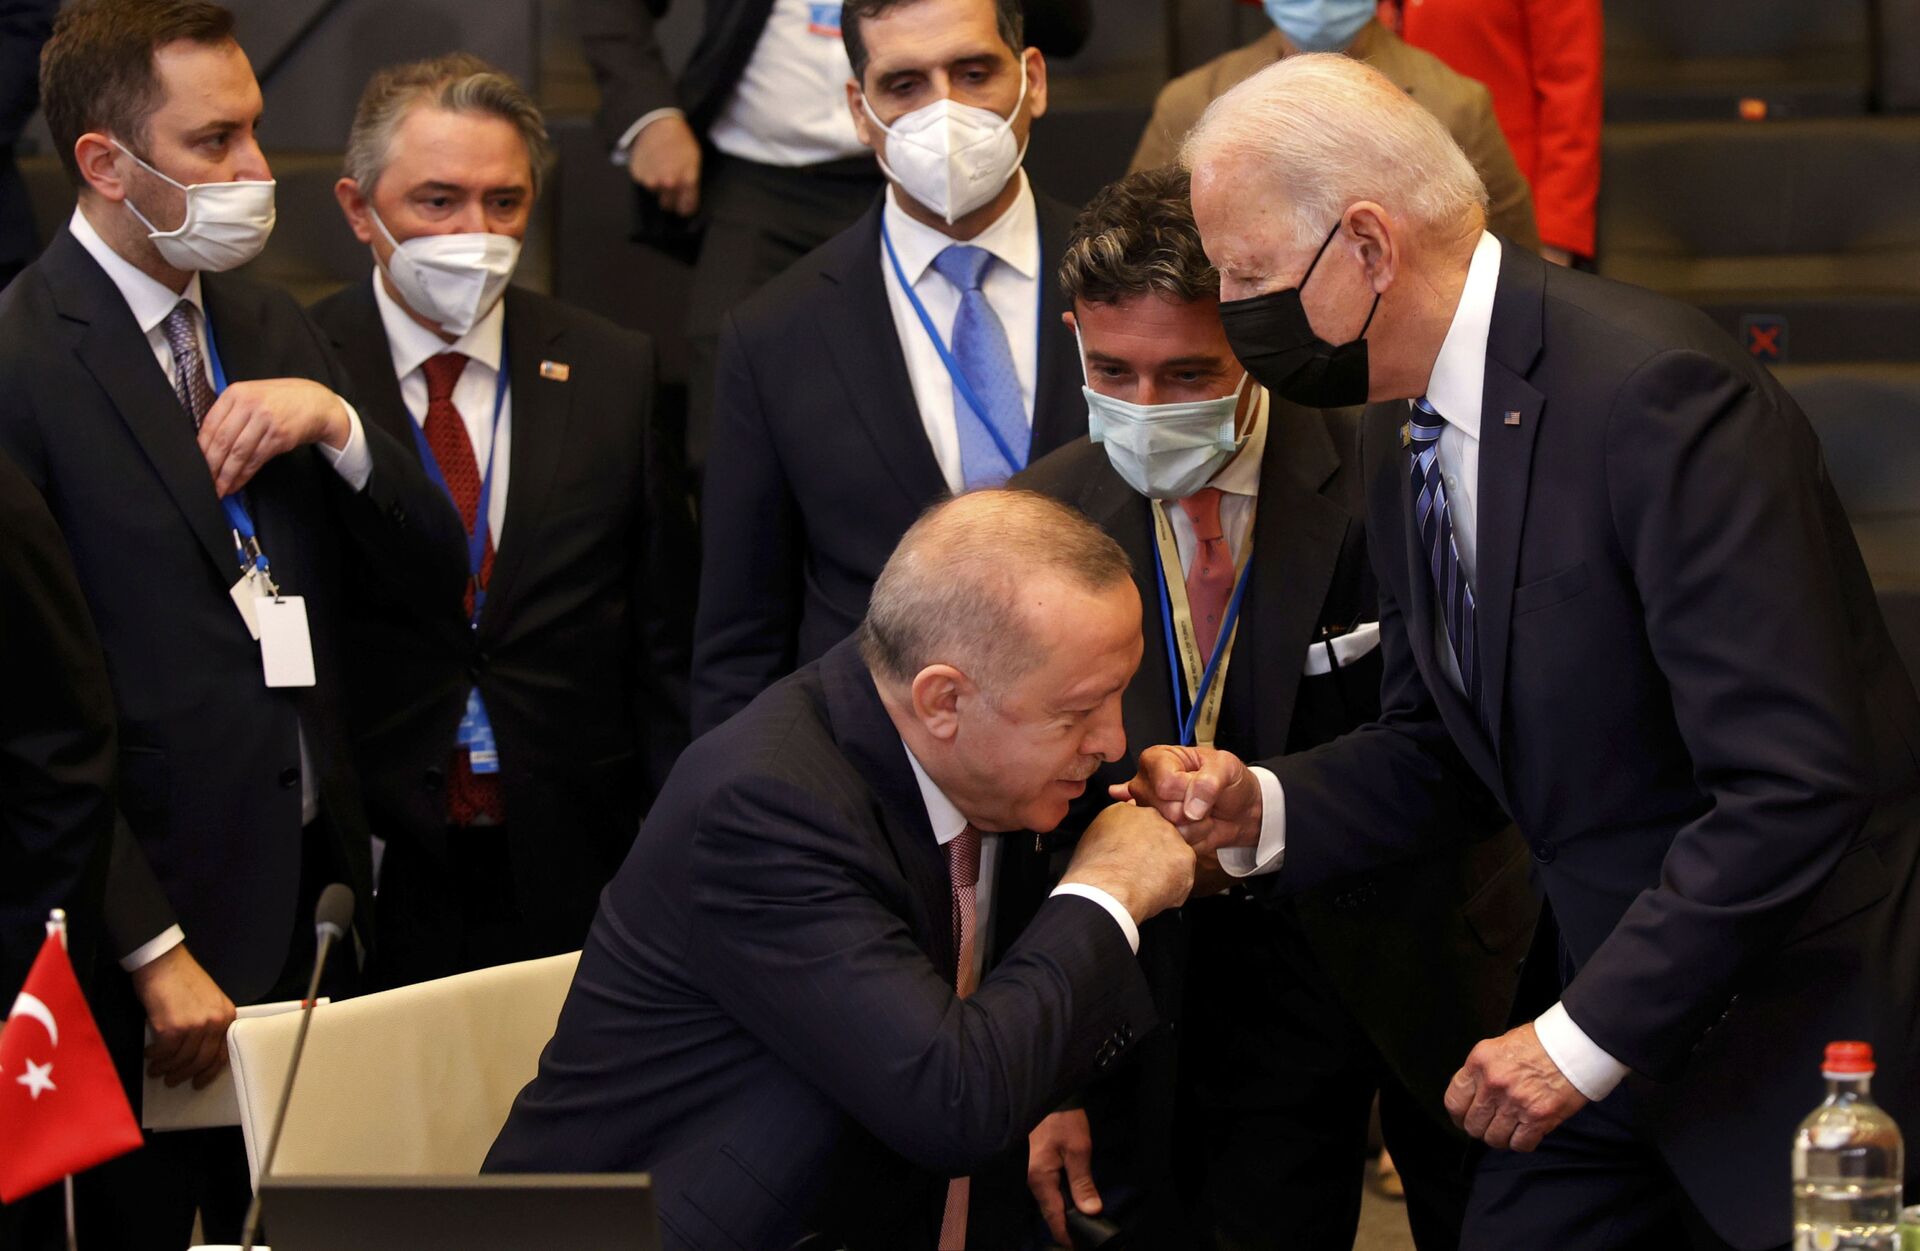 Erdogan acredita que reunião com Biden iniciou 'nova era' nas relações entre EUA e Turquia - Sputnik Brasil, 1920, 21.06.2021